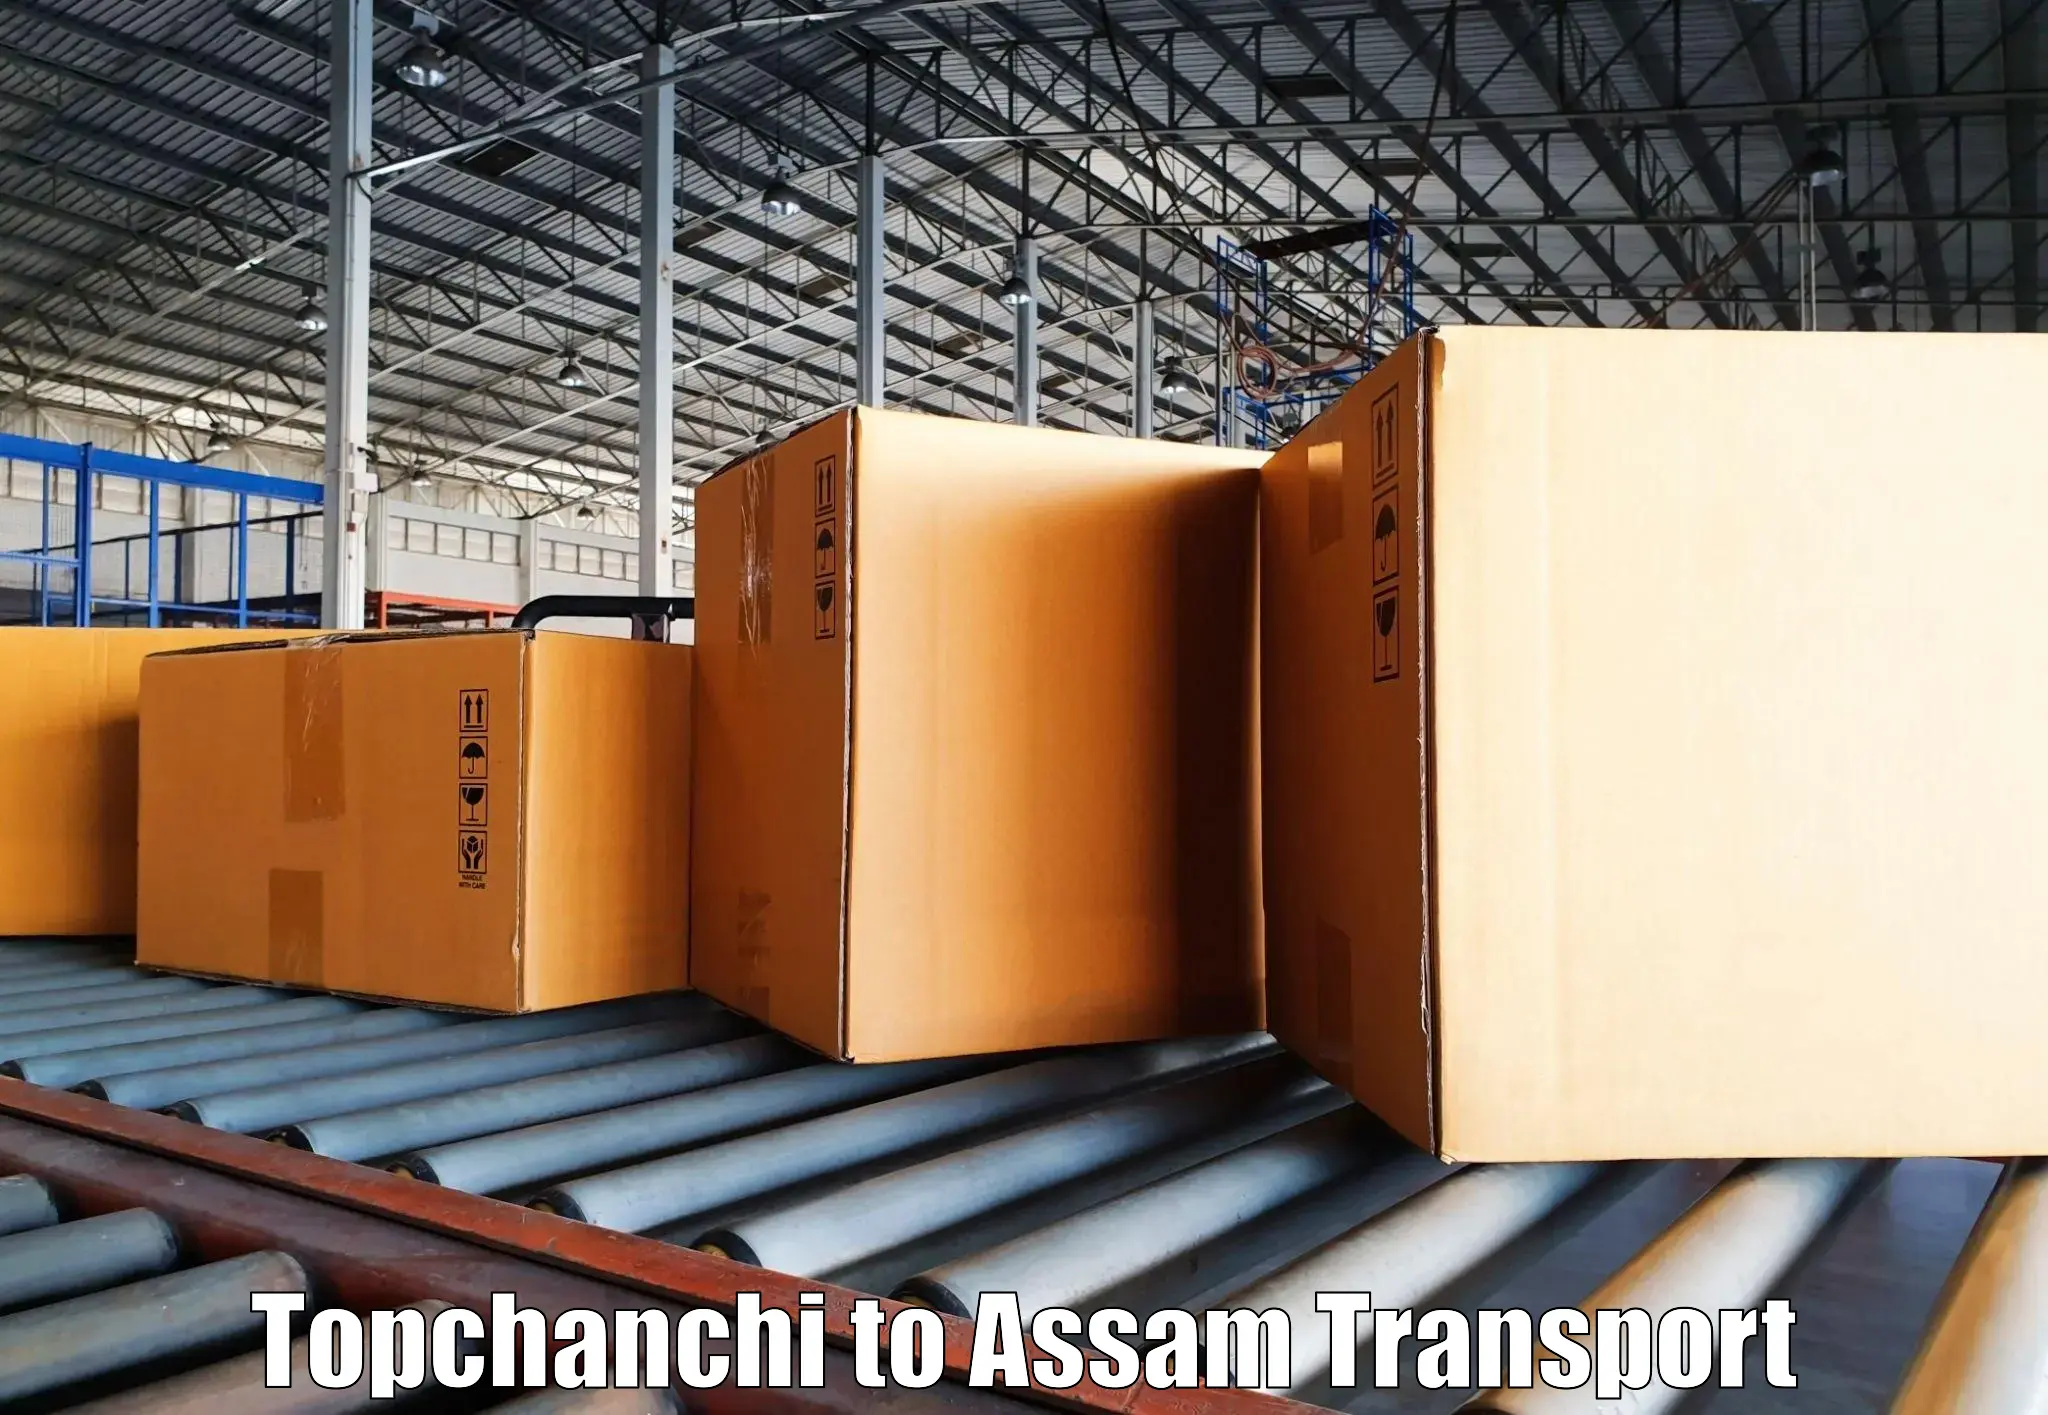 Online transport booking Topchanchi to Dhekiajuli